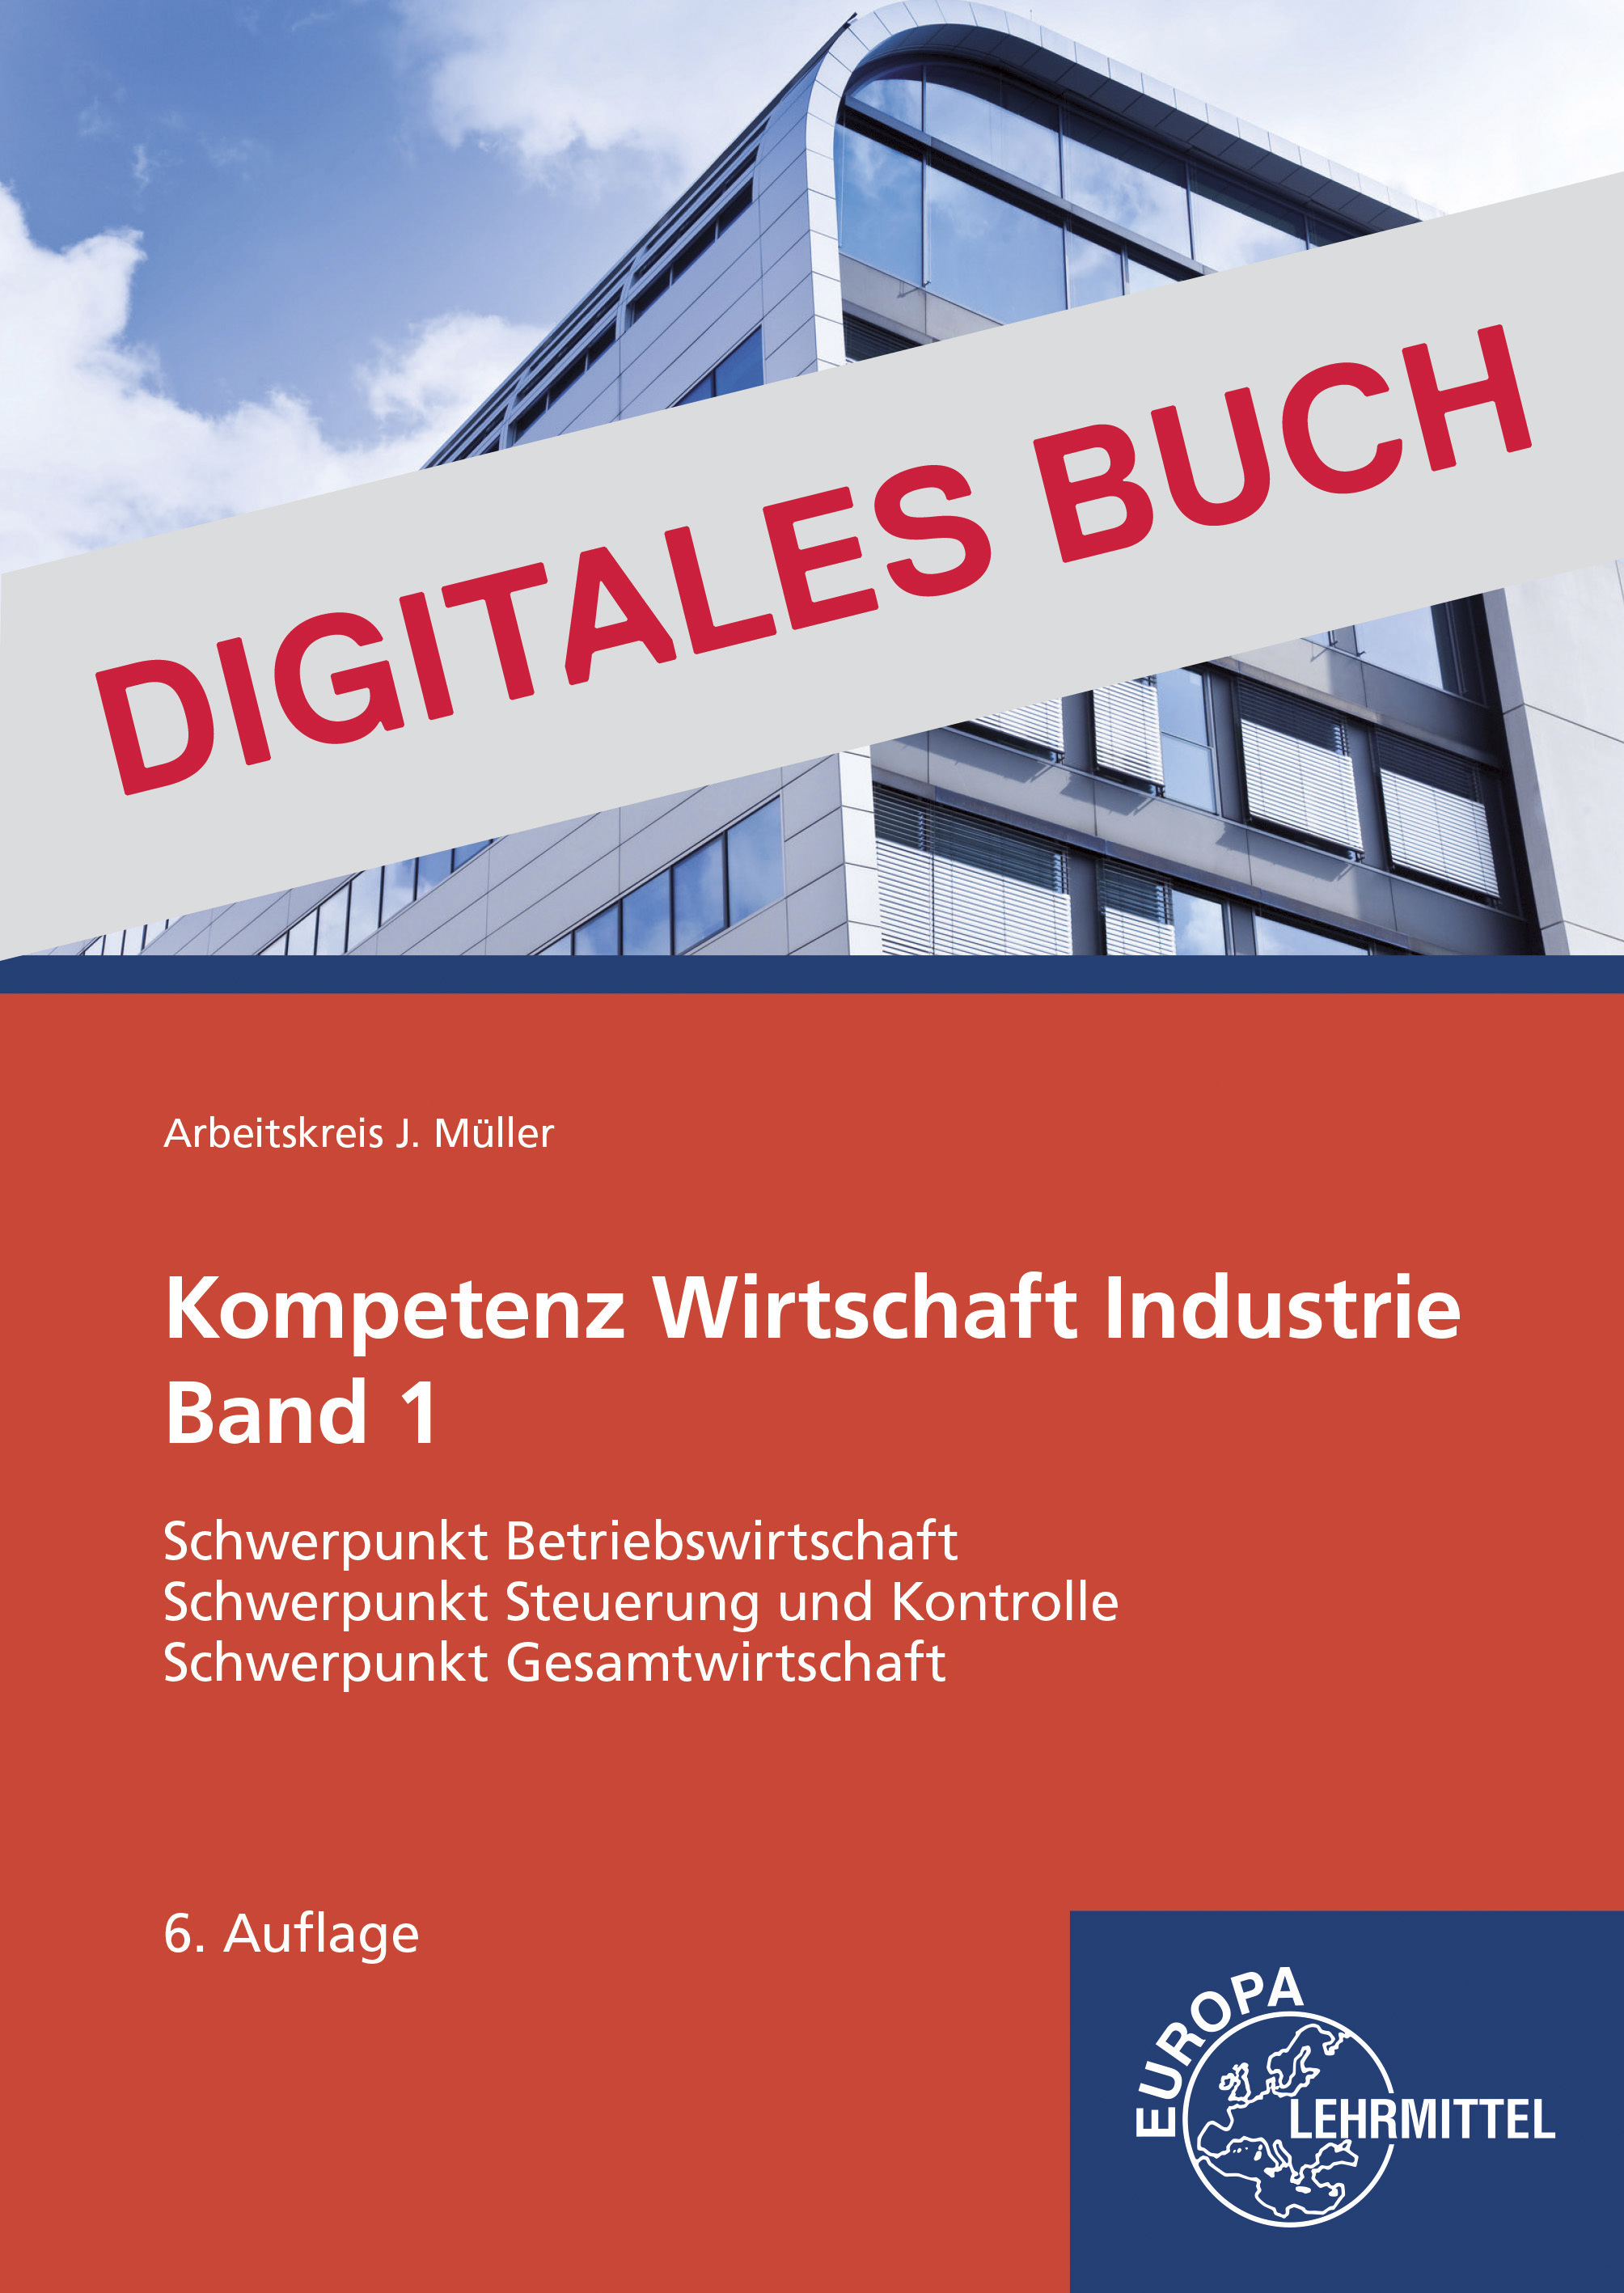 Kompetenz Wirtschaft Industrie Band 1 - Digitales Buch